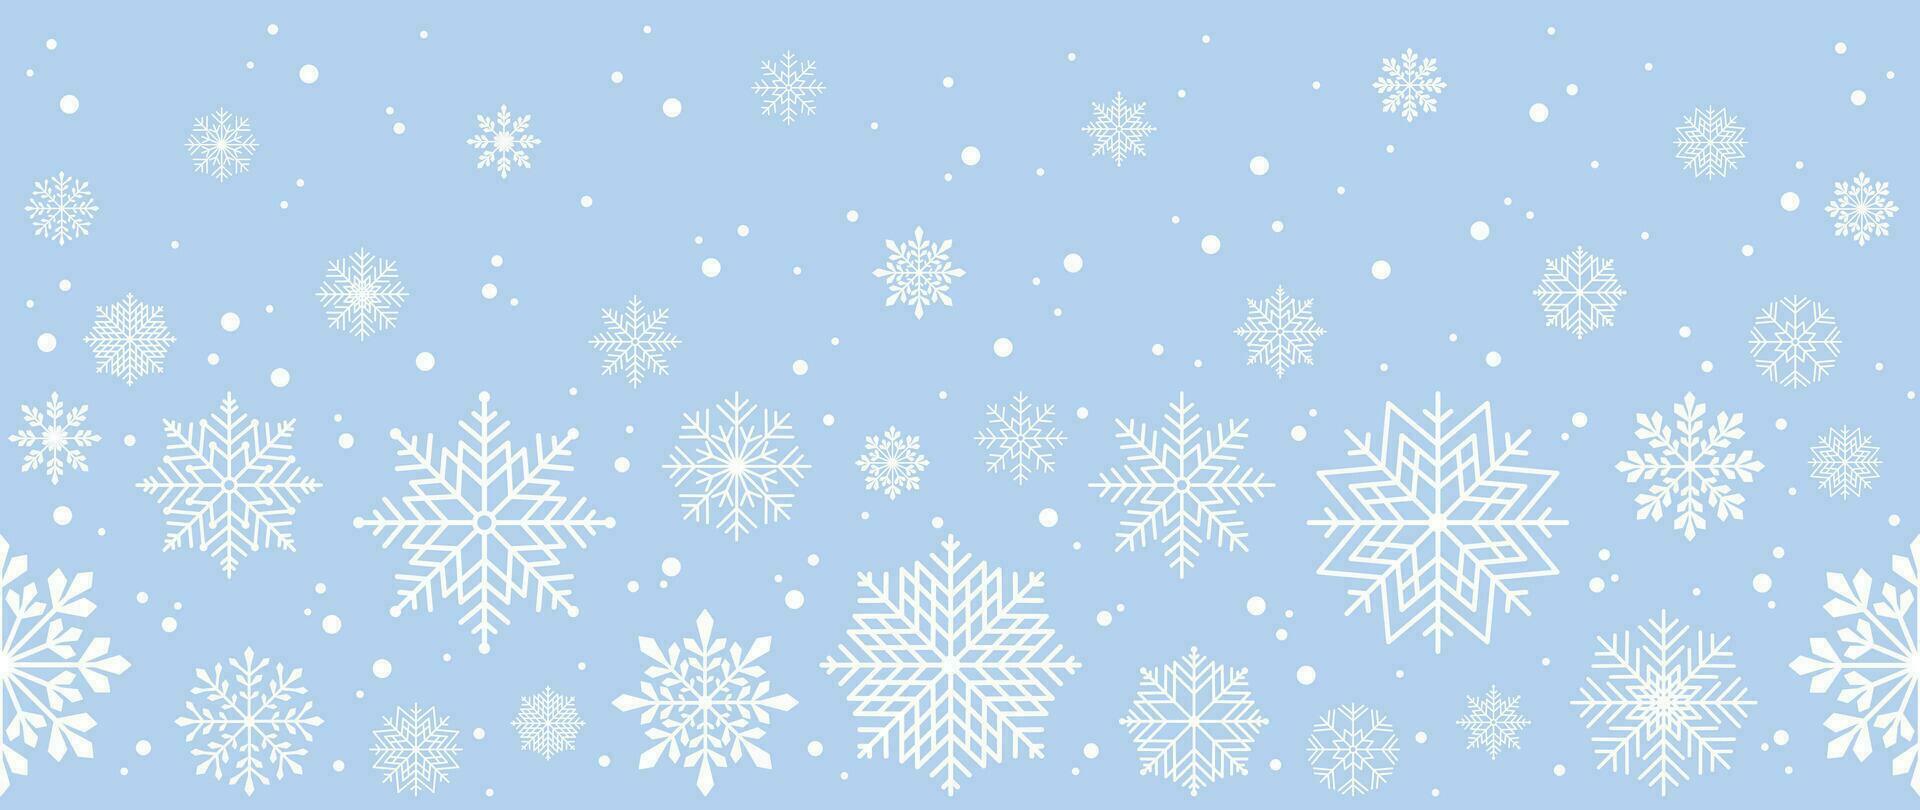 vinter- bakgrund med snöflingor och snö. sömlös mönster. vektor illustration för omslag, baner, affisch, webb, textilier och förpackning.